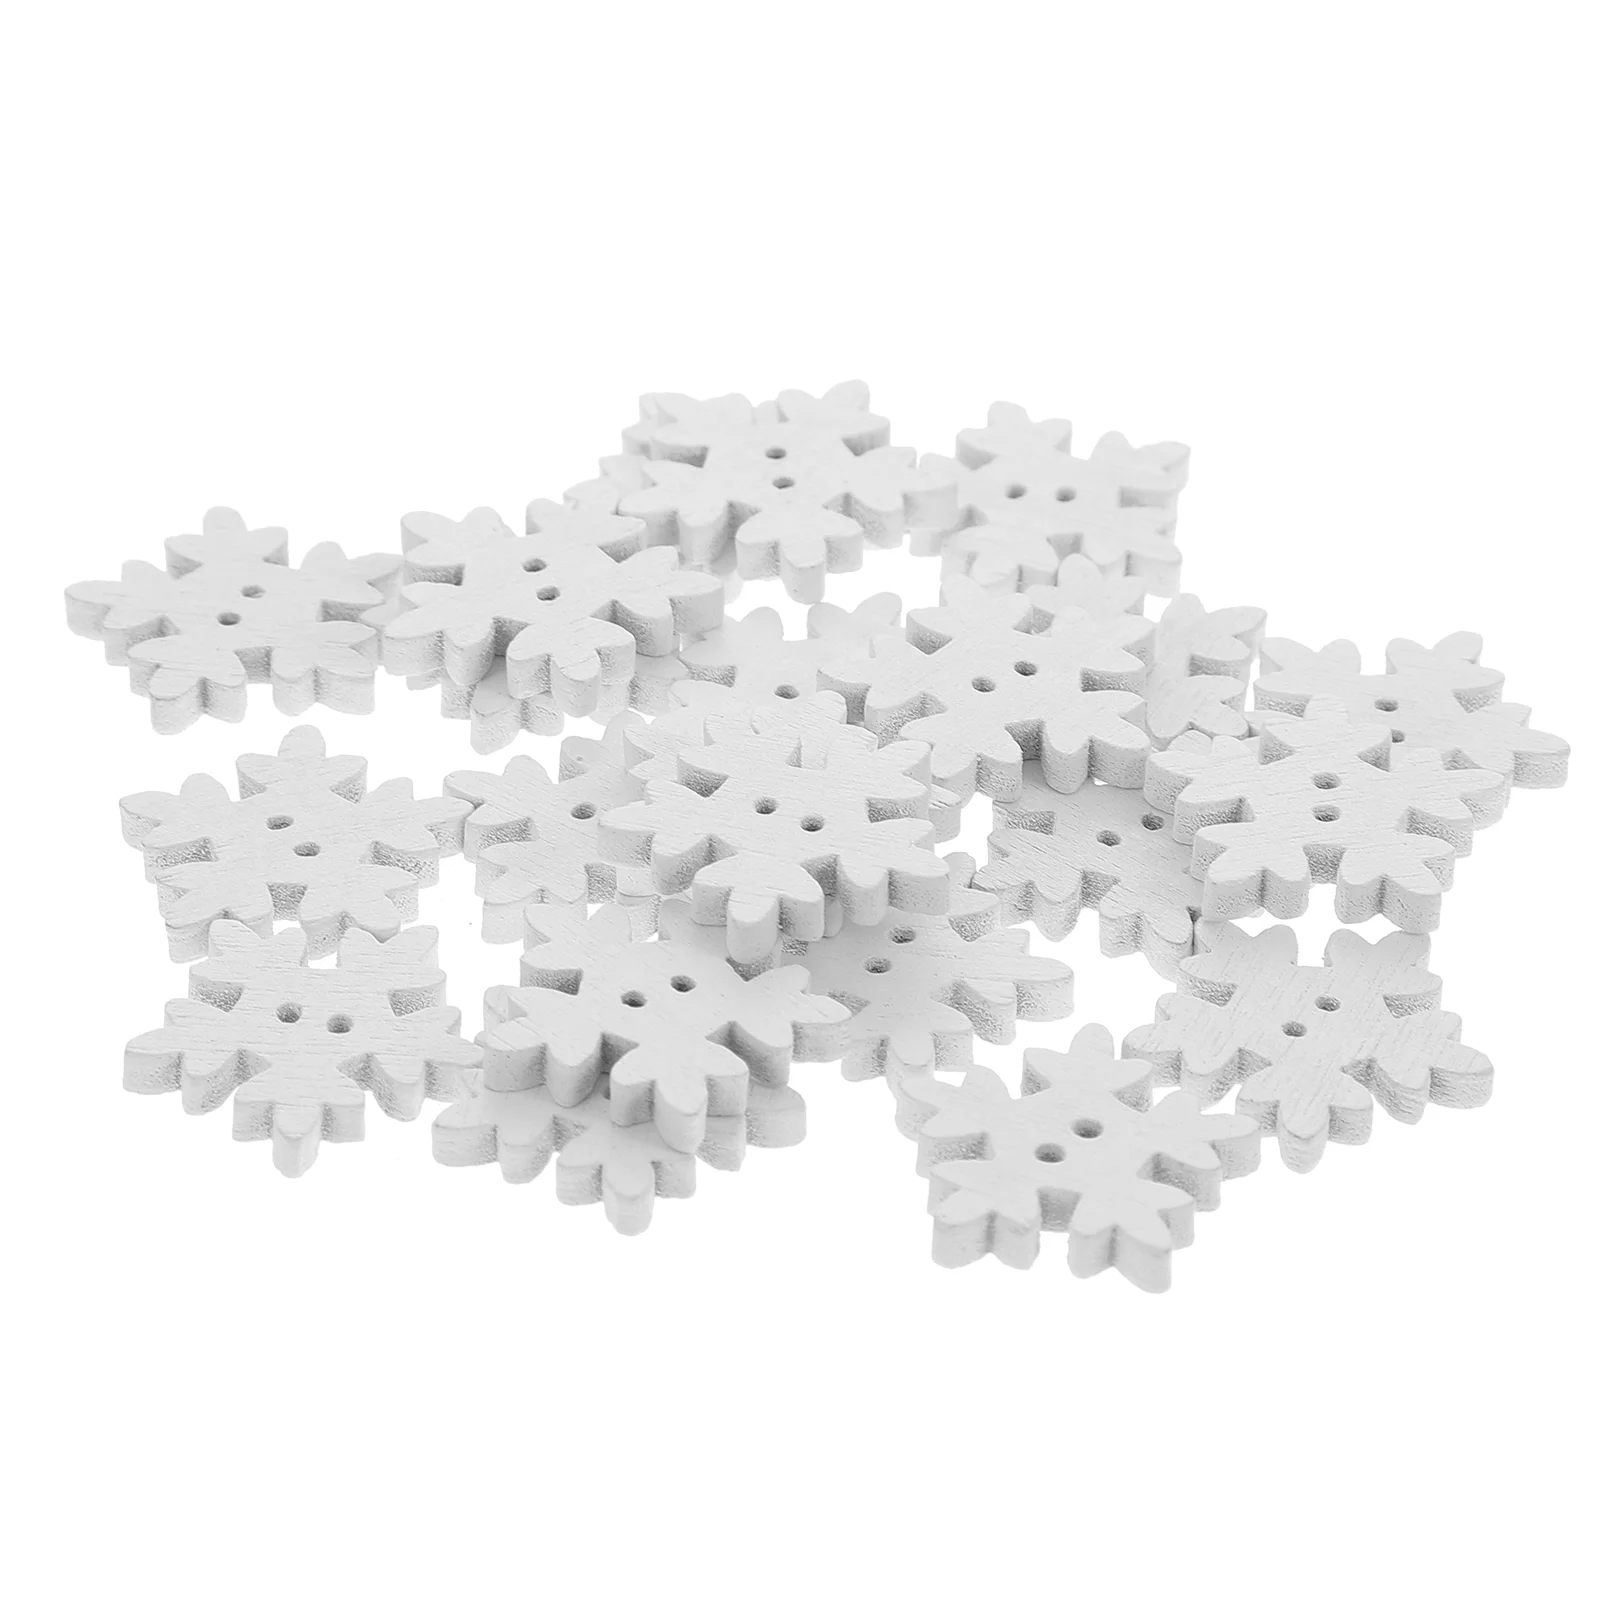 

50/100pcs 18mm Christmas Snowflake Buttons Decorative Wooden Button DIY Buttons Christmas Decorations For Kids Children